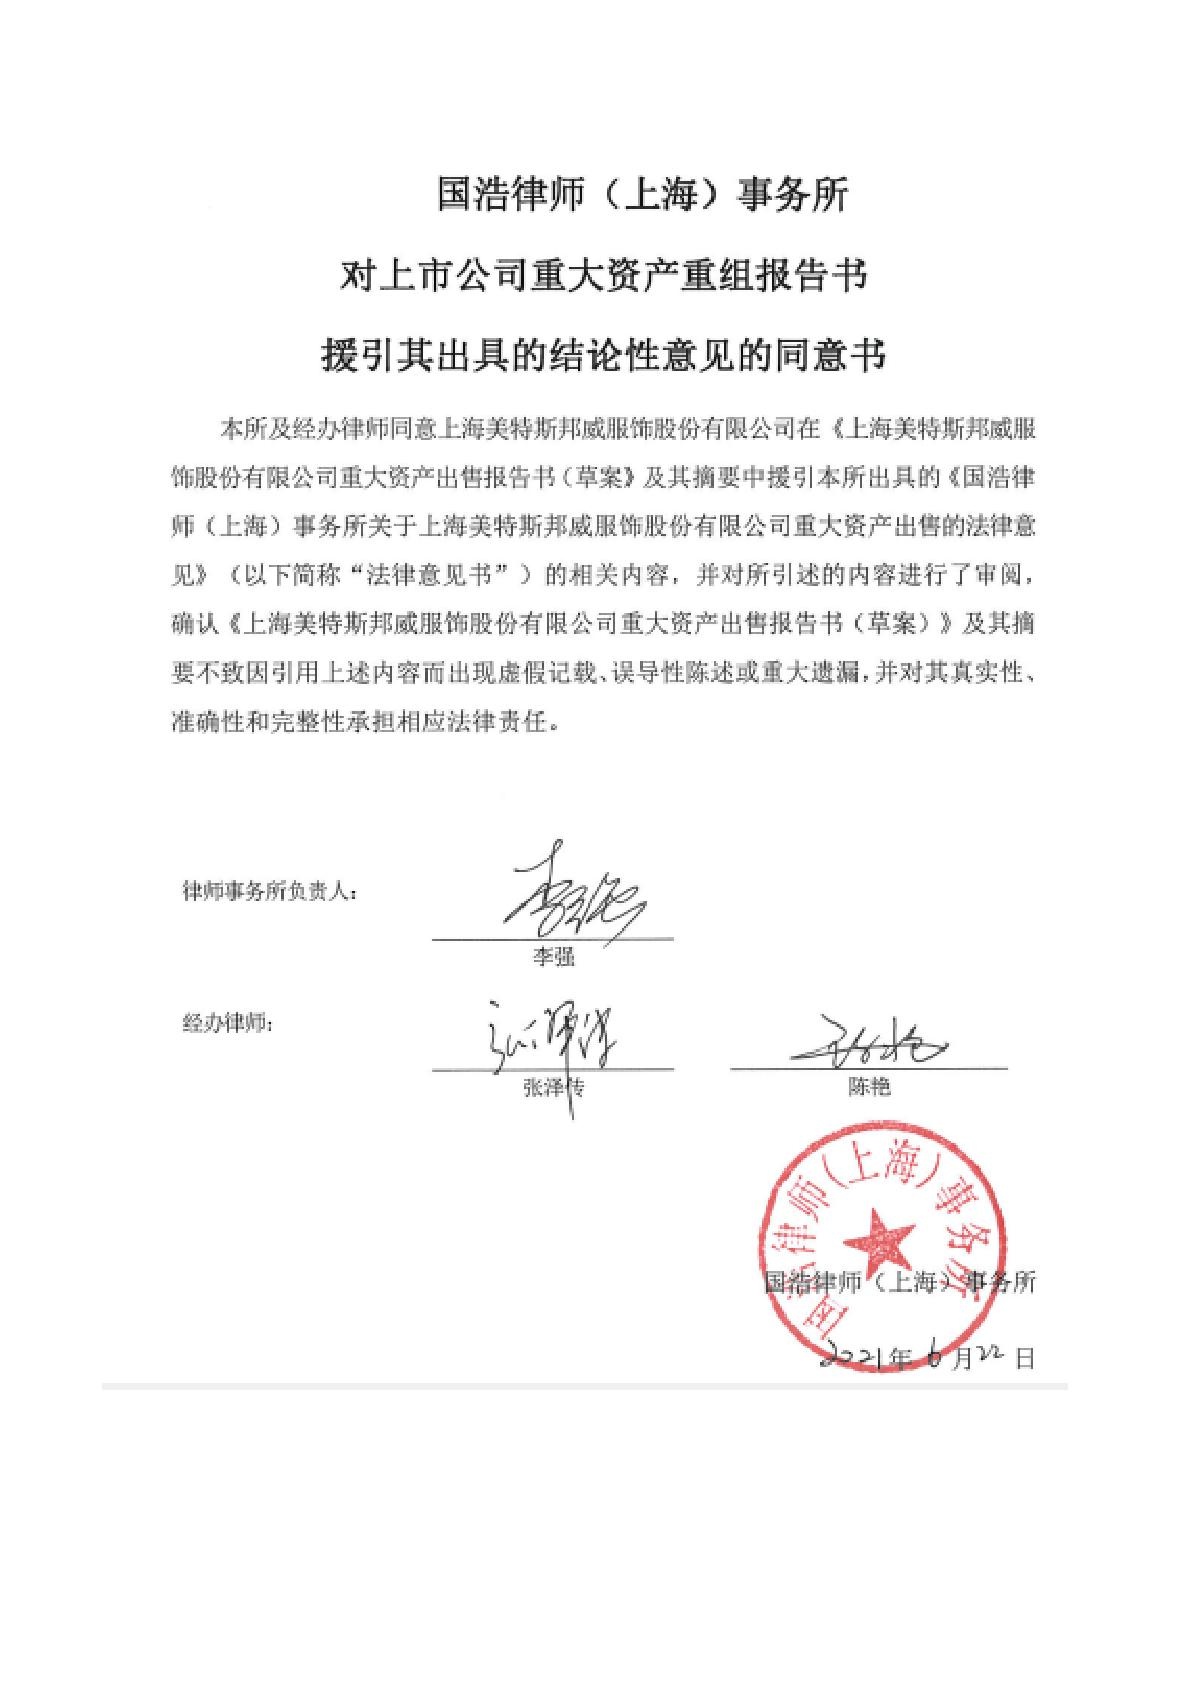 美邦服饰:国浩律师(上海)事务所对上市公司重大资产重组报告书援引其